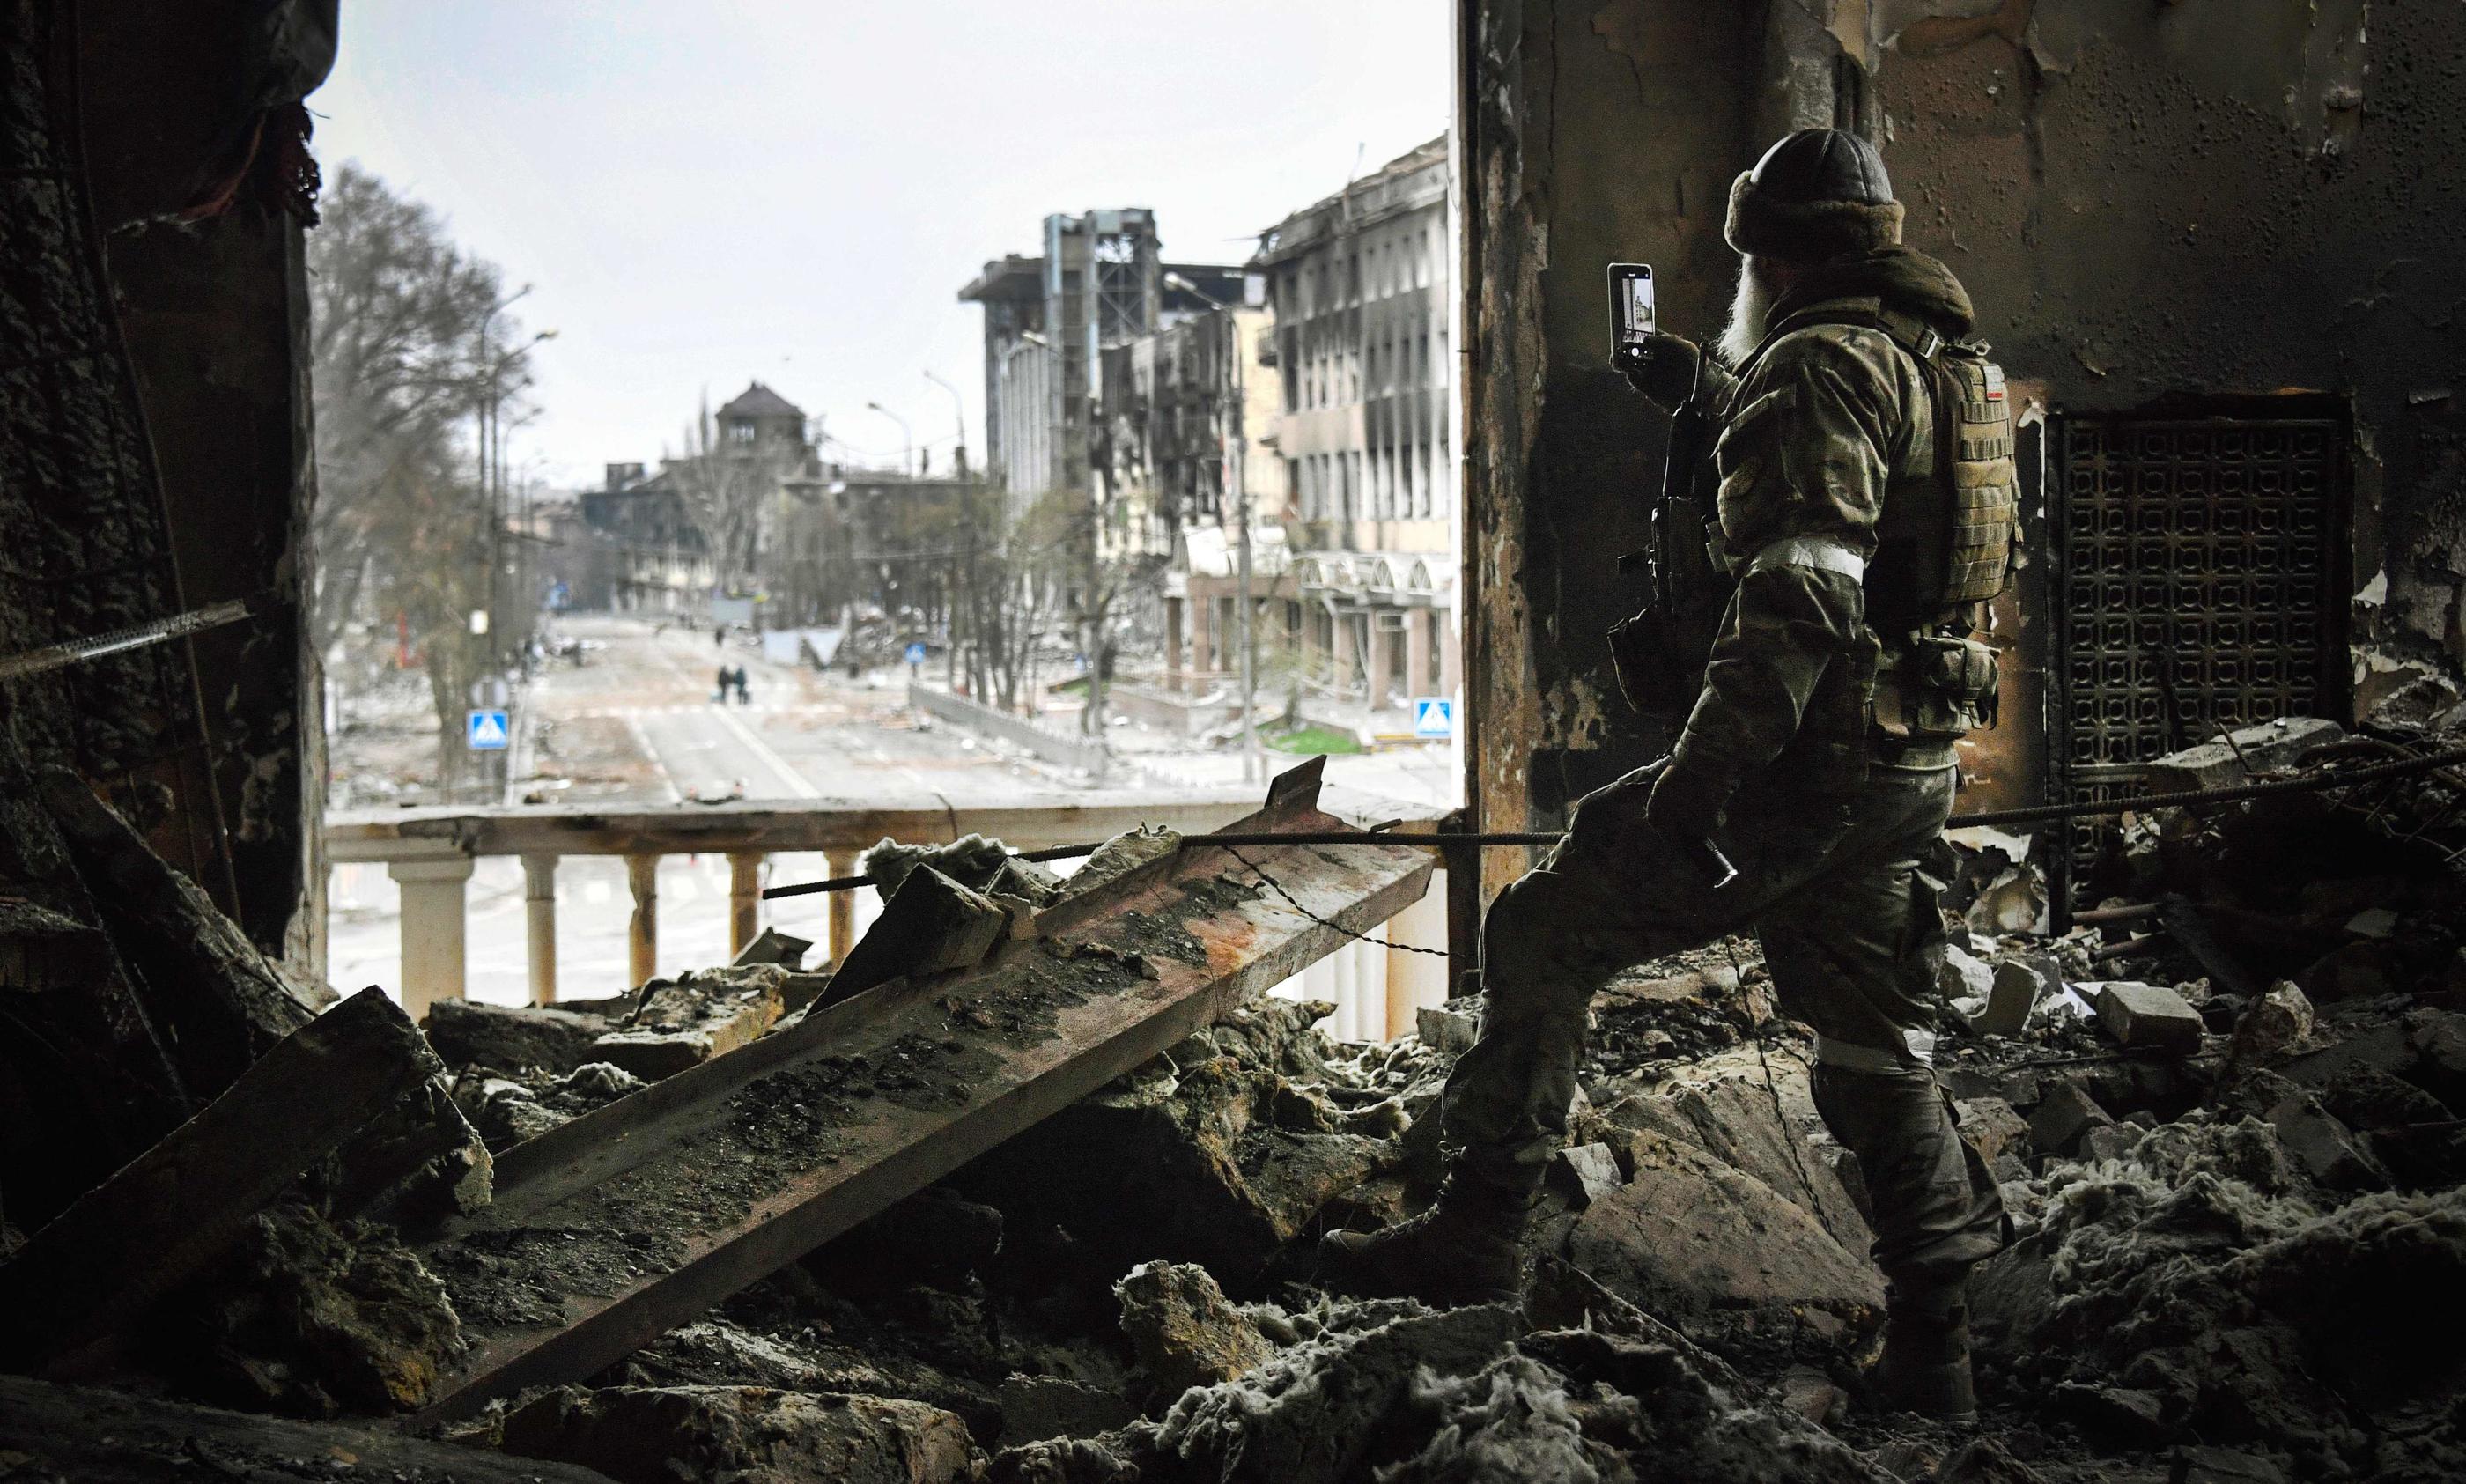 Depuis juin, l’armée russe continue d’avoir l’avantage sur l’ukrainienne en terme d’armement, sur fond de la lente contre-offensive ukrainienne. AFP/Alexander Nemenov